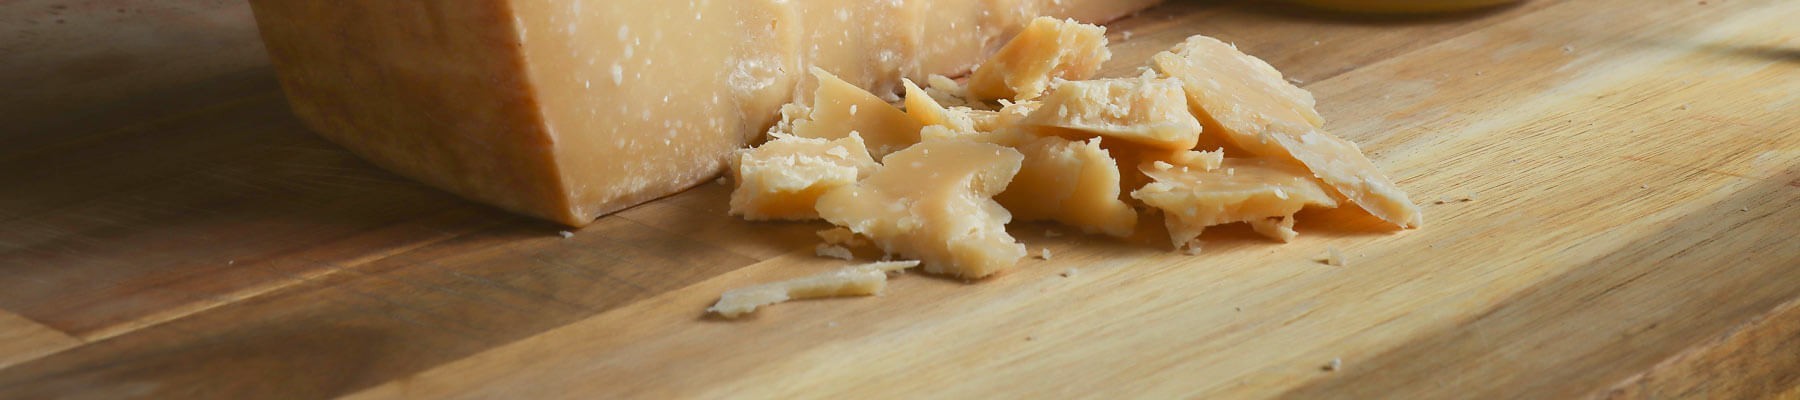 Parmigiano Reggiano Vacche Brune: Online Kaufen der Parmesan Käse der Braunviehrasse